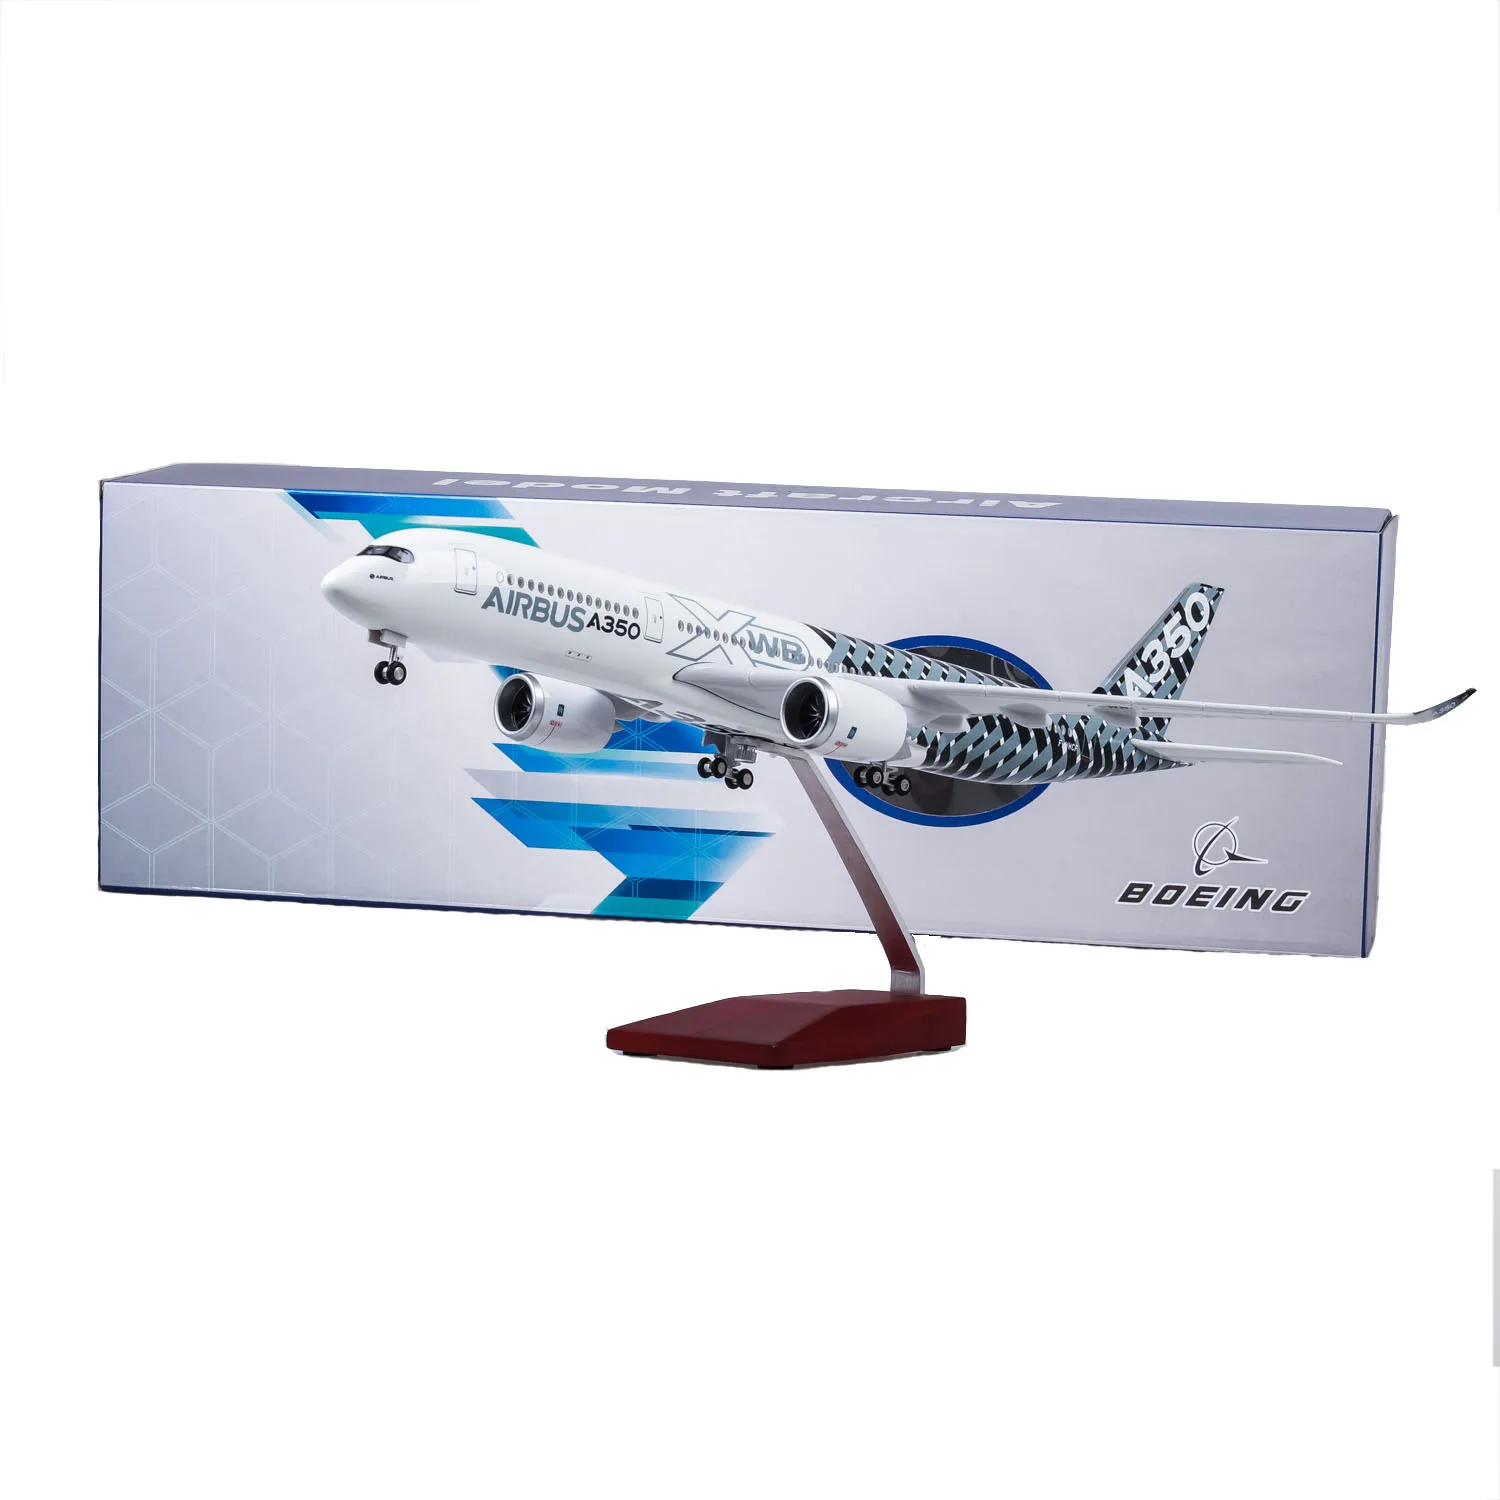 47 см 1/142 Airbus A350 прототип XWB авиационная модель самолета Смола airframe W шасси и легкие игрушки самолеты самолет с фиксированным крылом